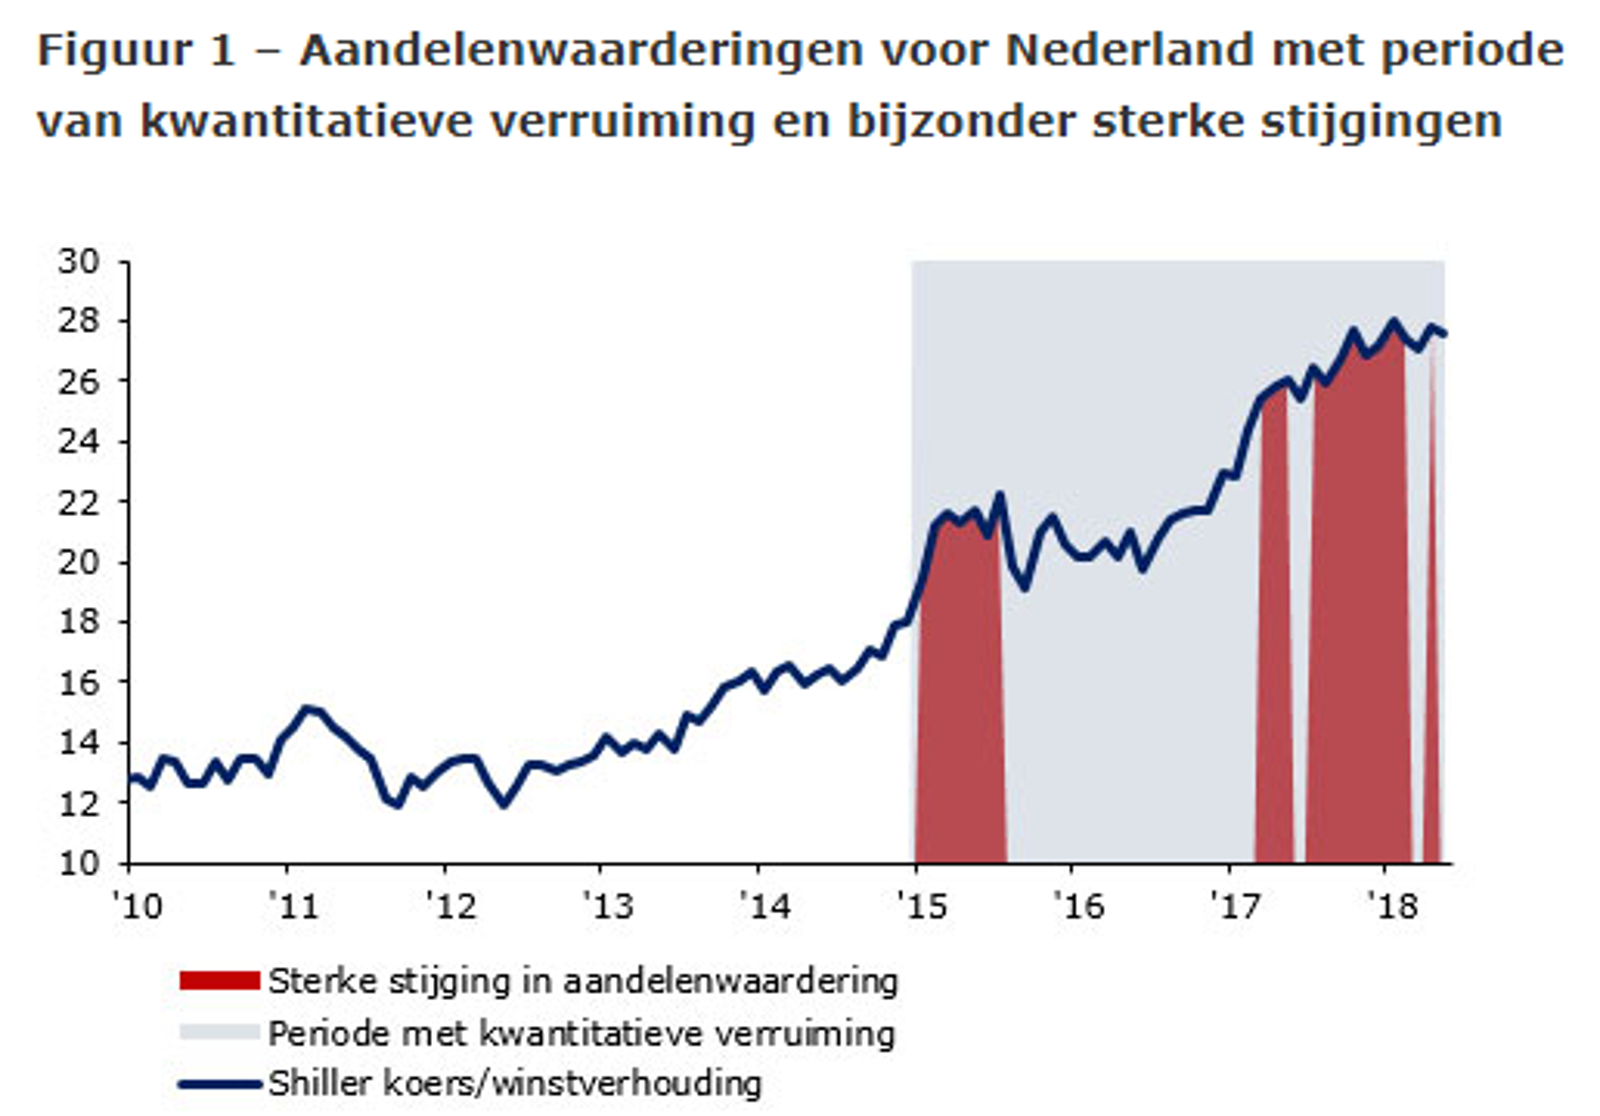 Aandelenwaarderingen voor Nederland met periode van kwantitatieve verruiming en bijzonder sterke stijgingen